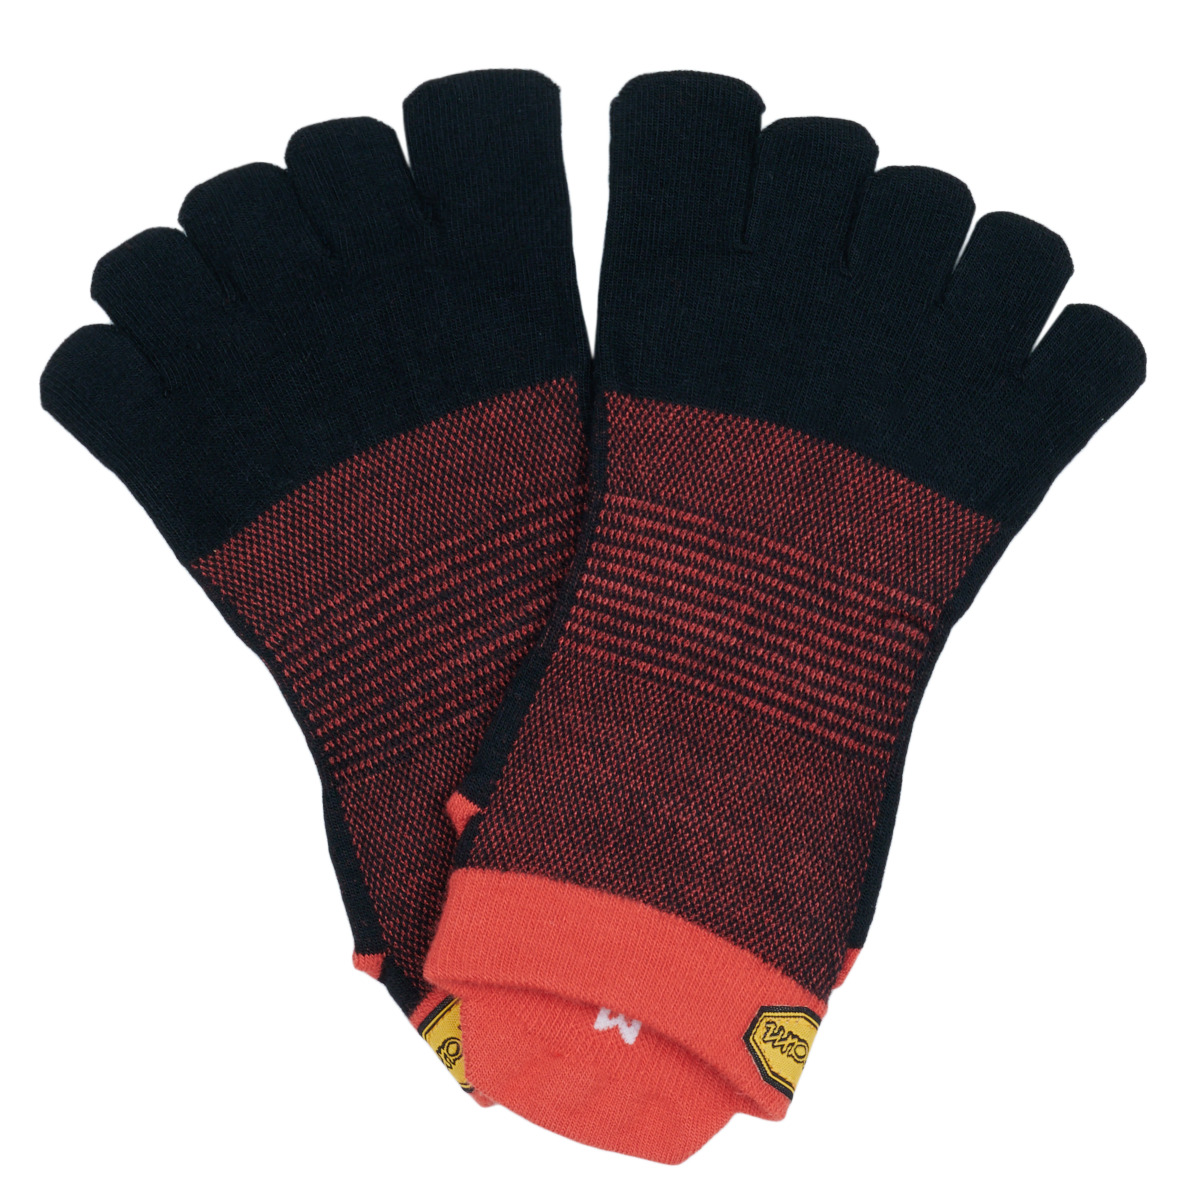 Doplňky  Sportovní ponožky  Vibram Fivefingers ATHLETIC NO SHOW Červená / Černá